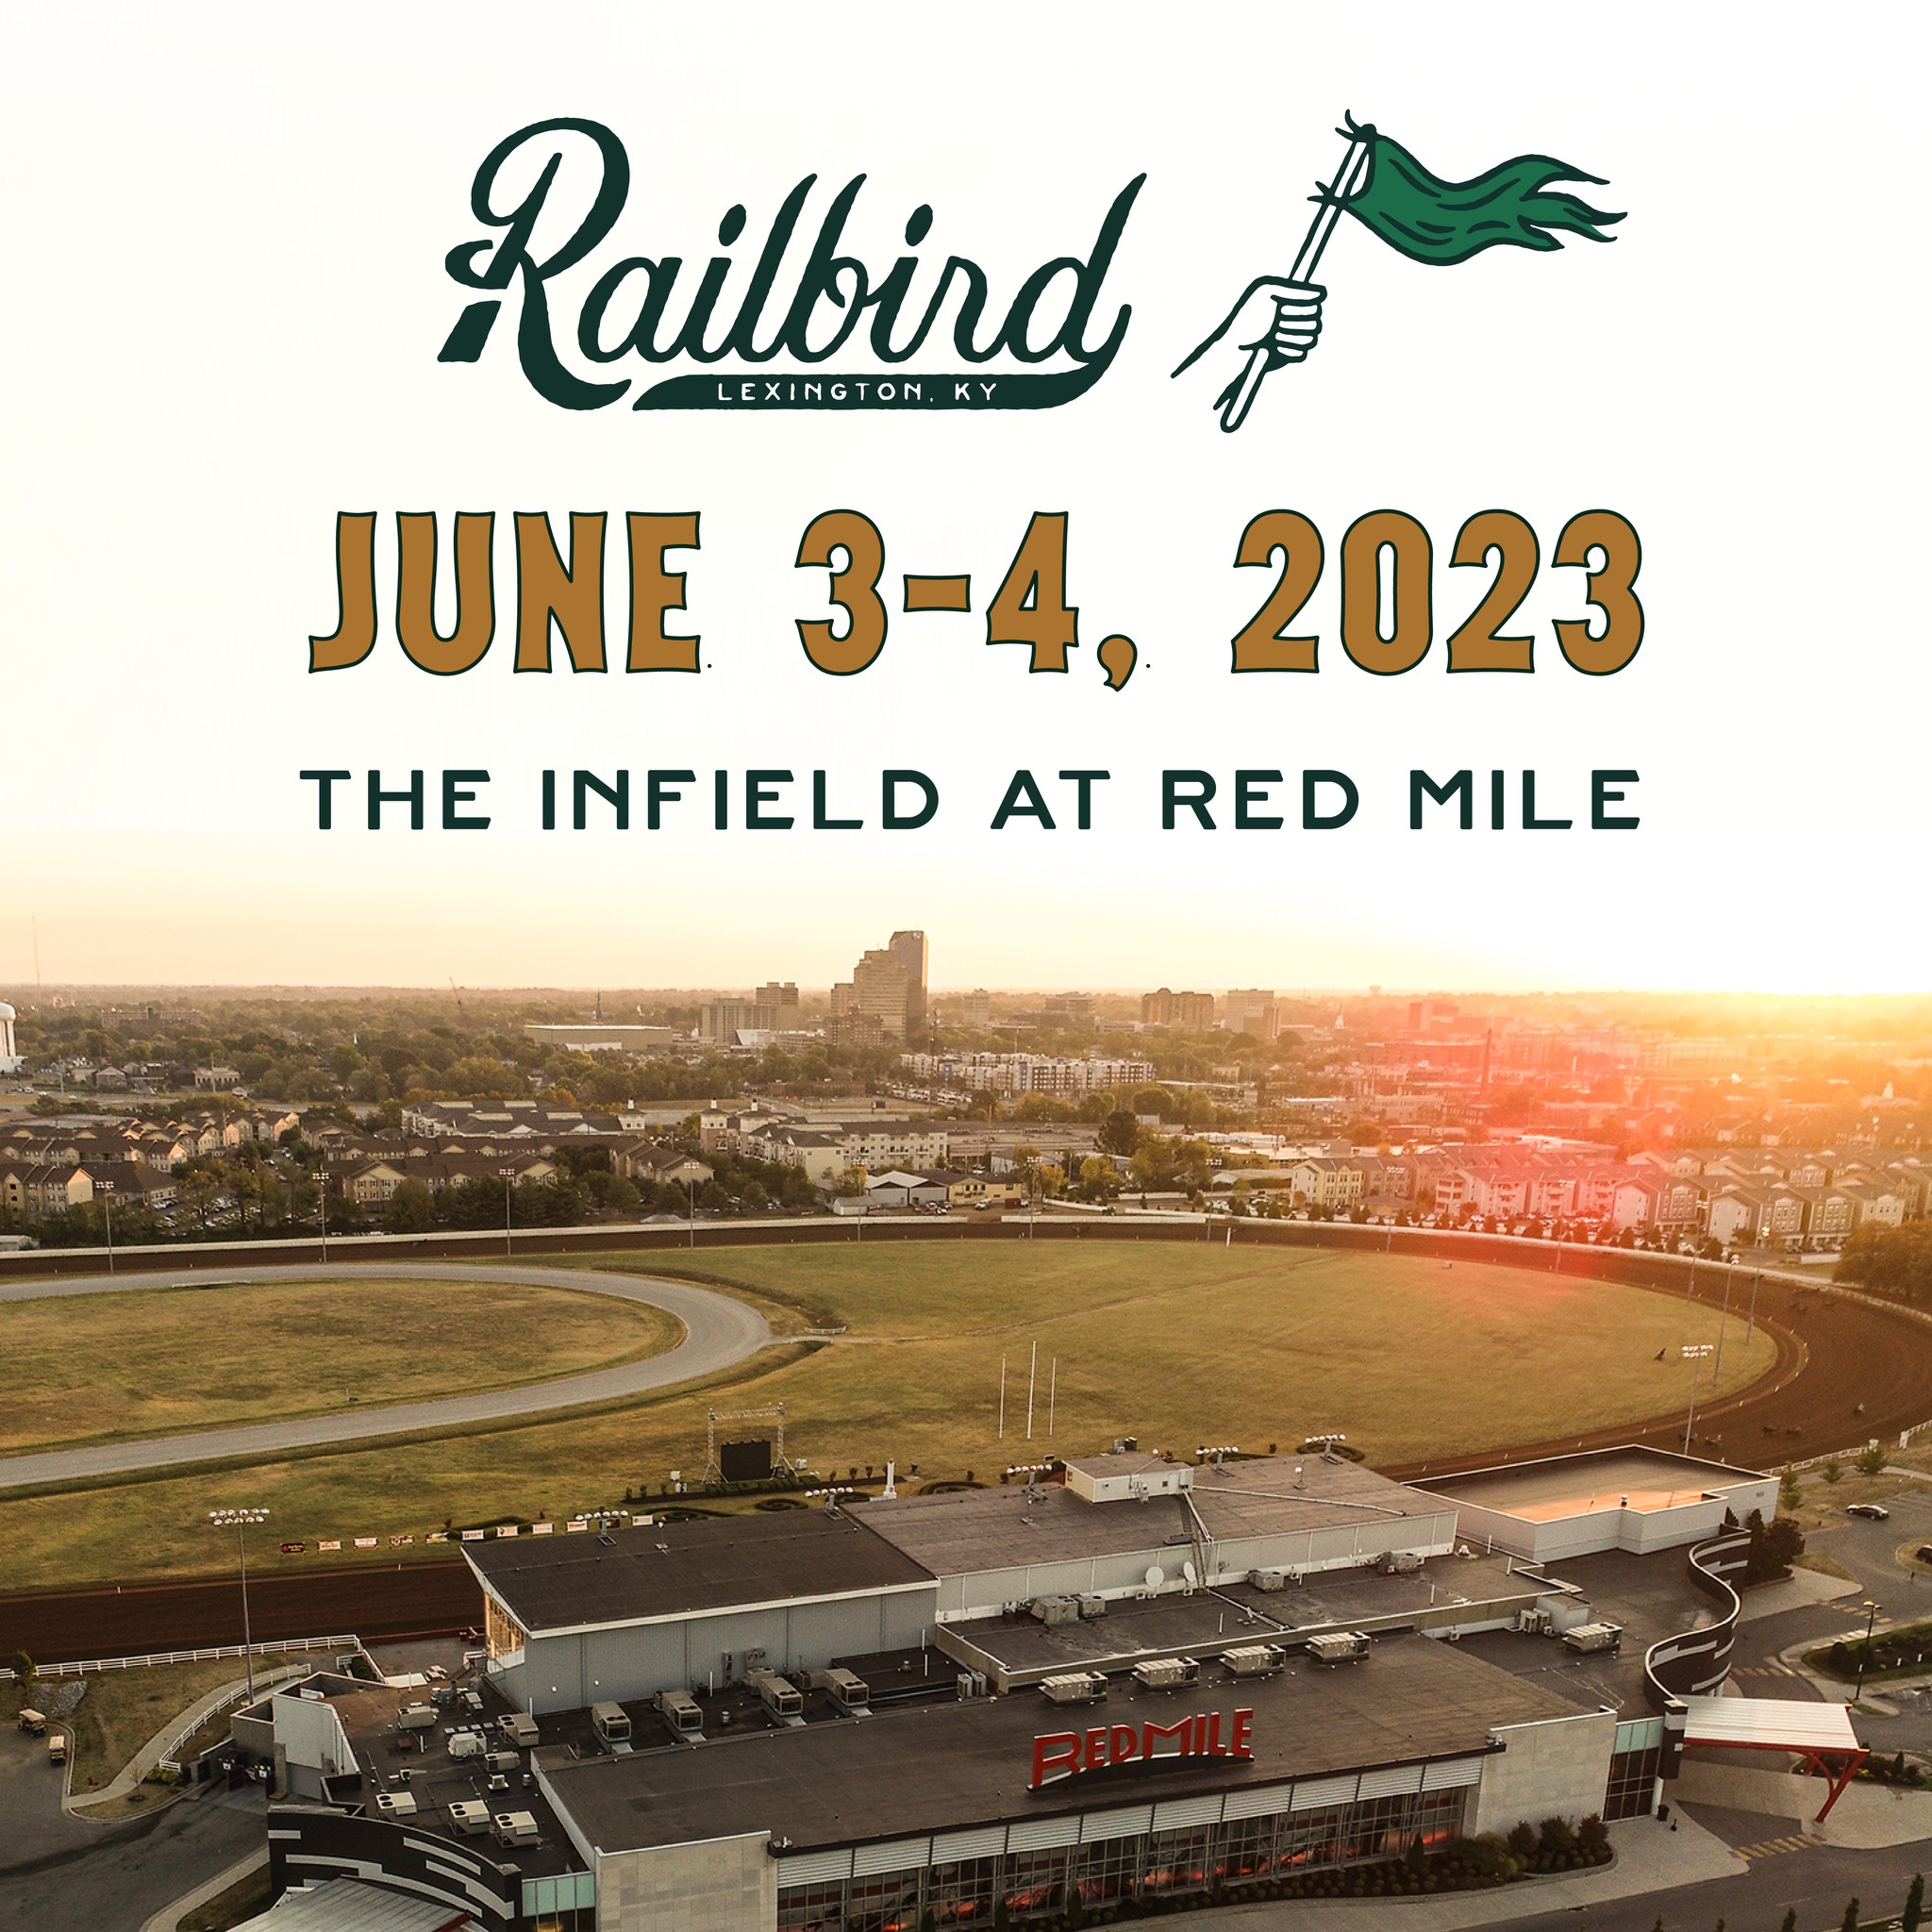 No Railbird Festival for 2022, dates set for 2023 ABC 36 News